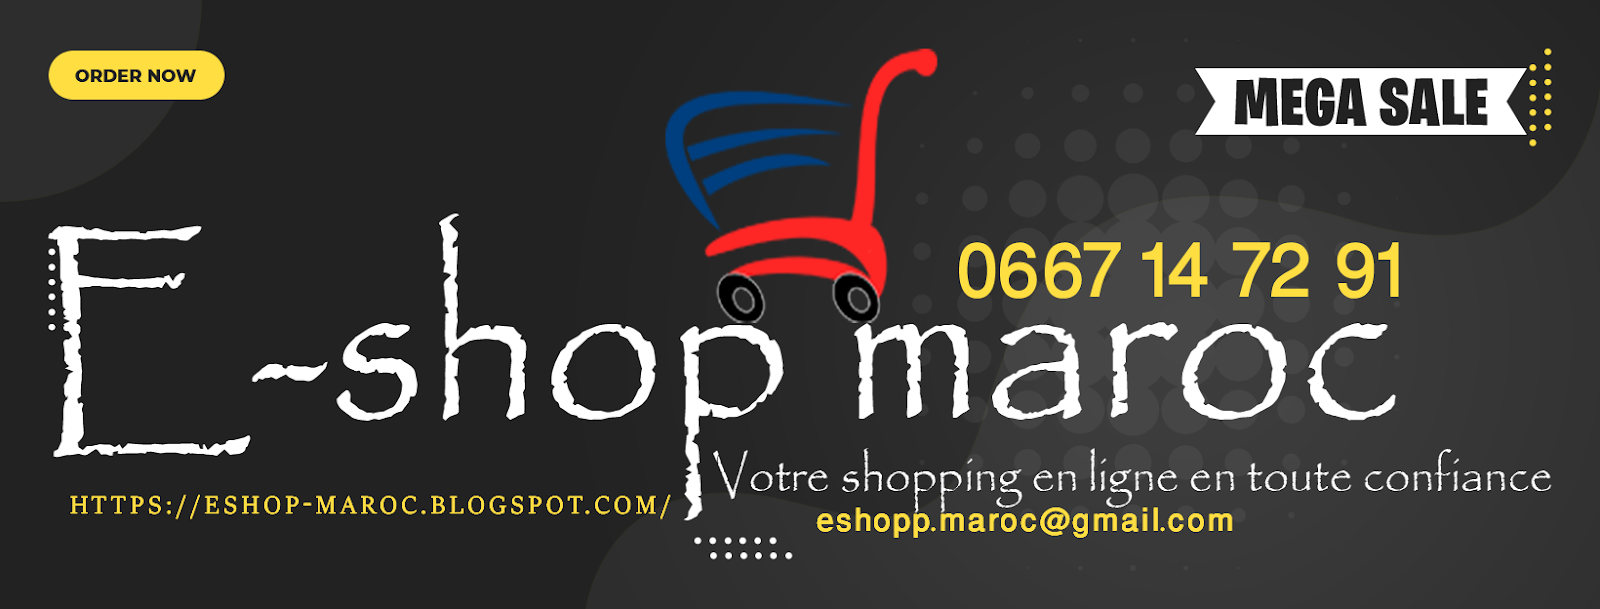 E-shop maroc